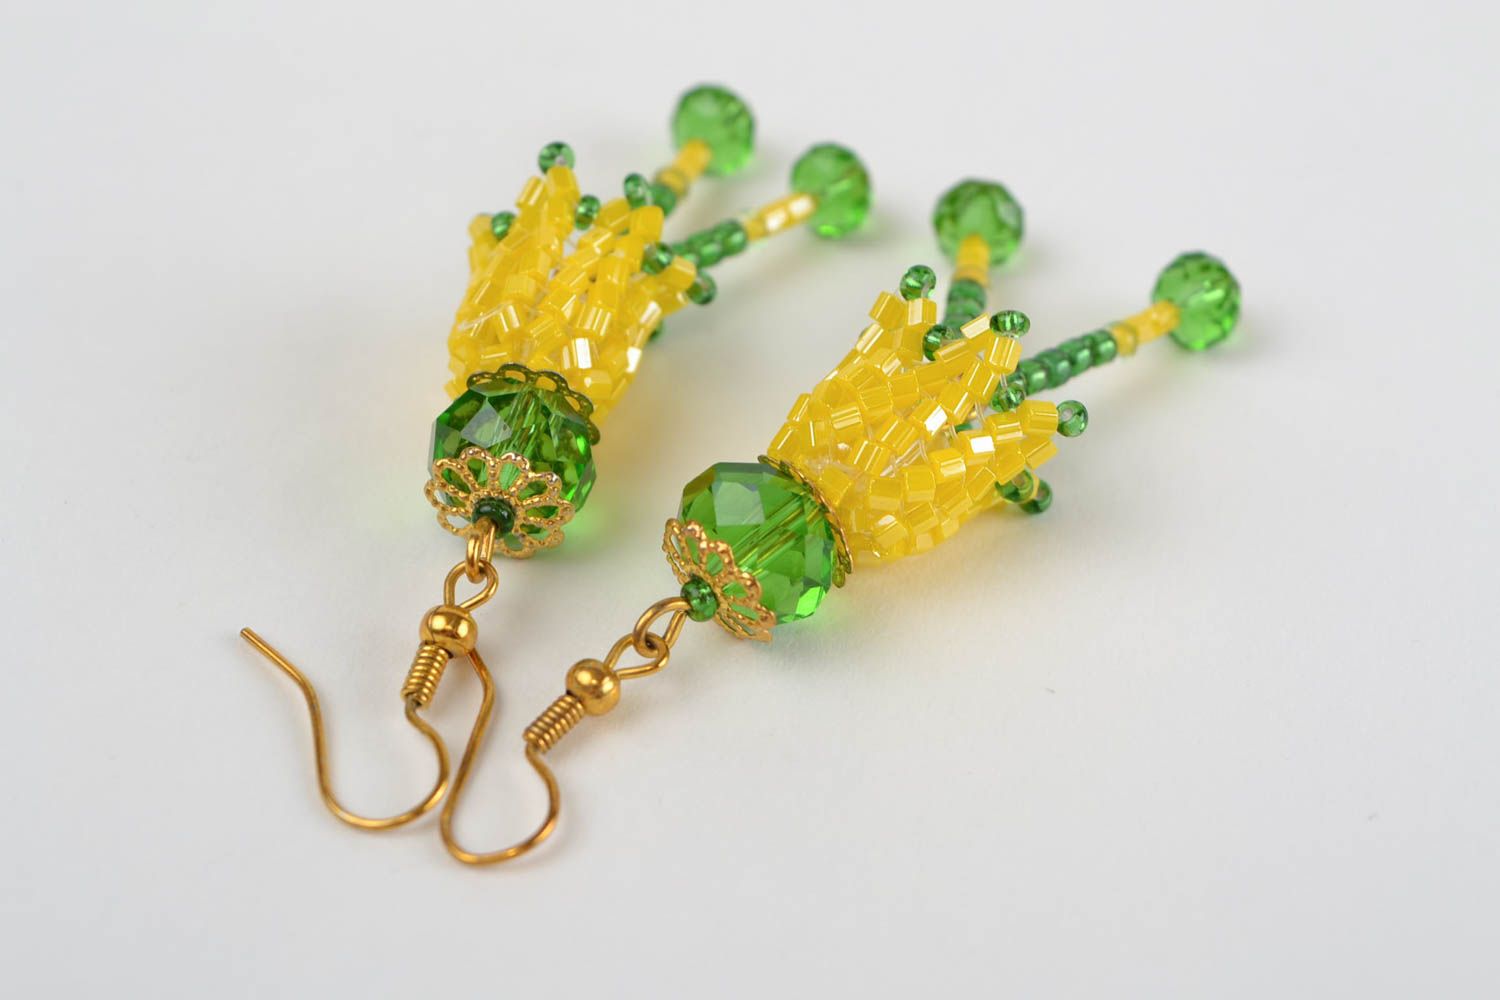 Цветочные серьги из бисера ручной работы вязаные крючком желтые с зеленым фото 4